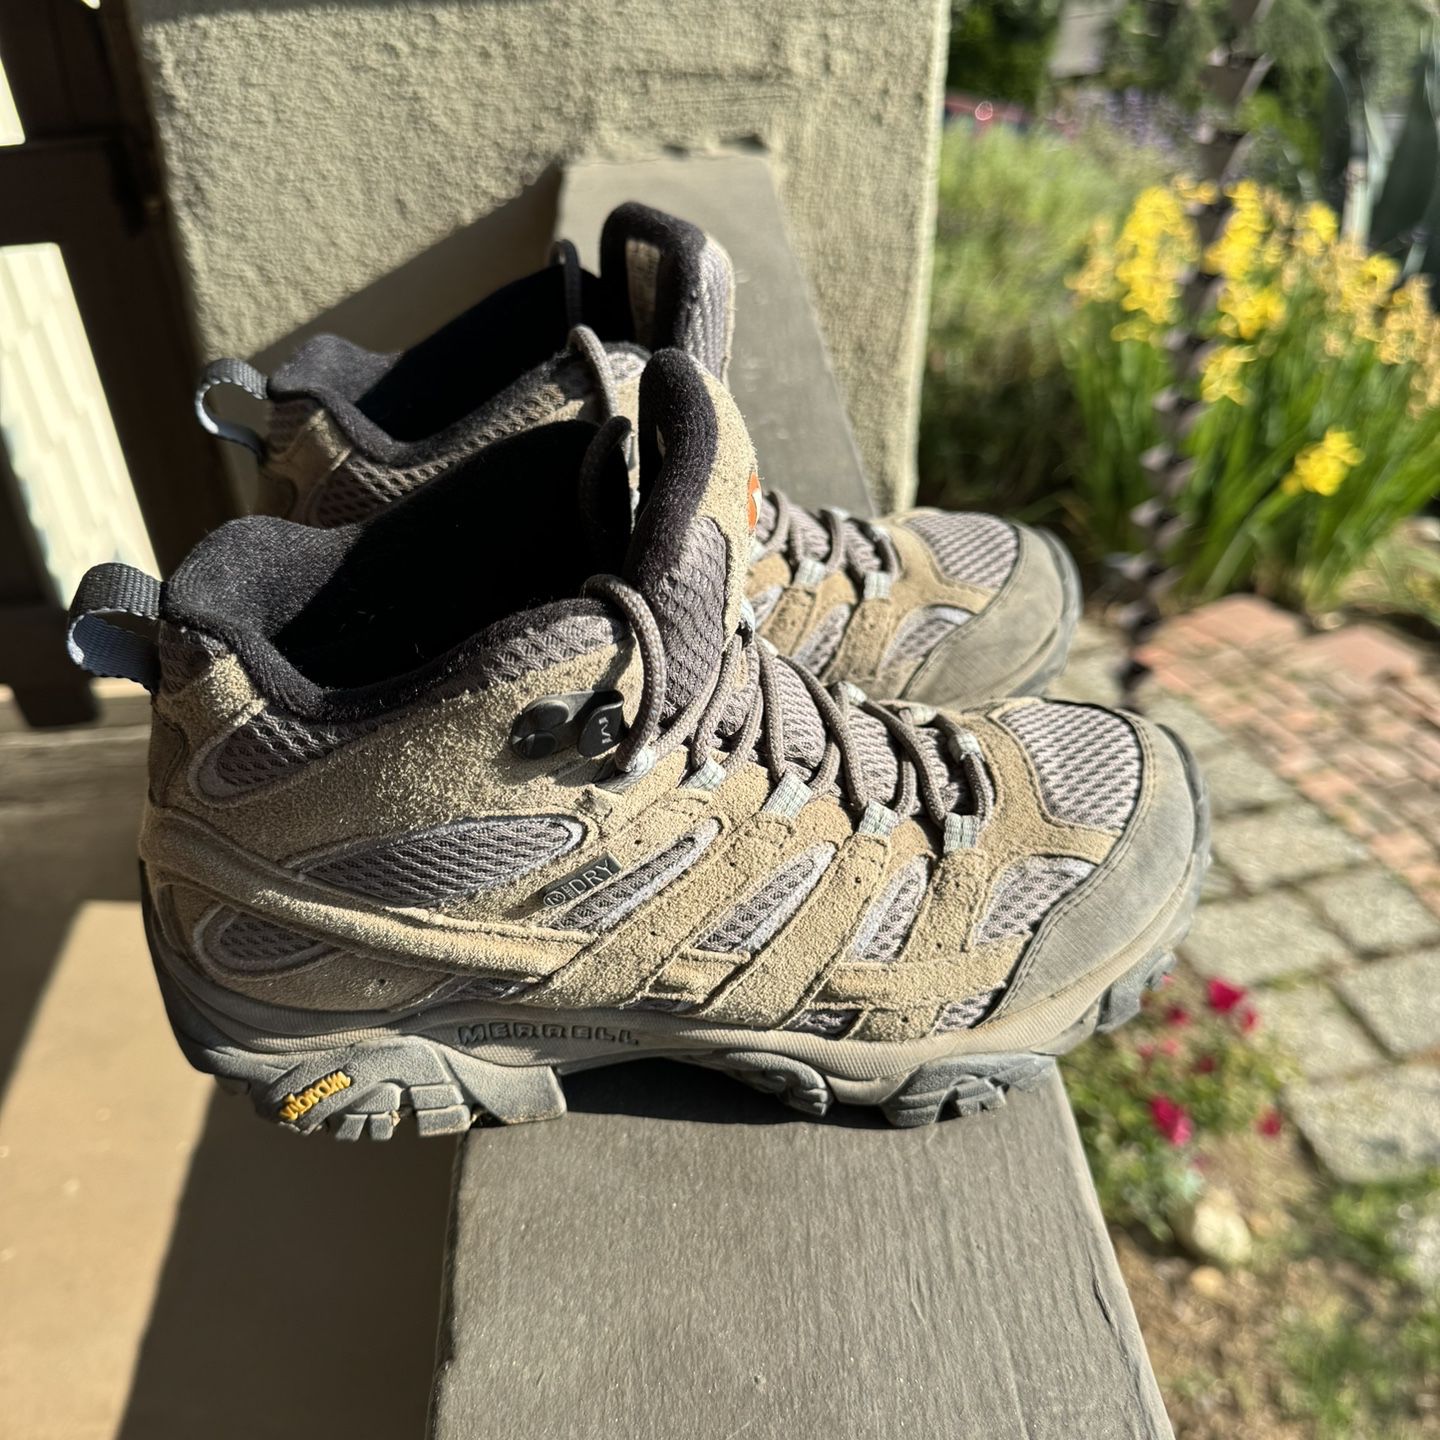 Merrell Vibram Dry Women’s Hiking Boot - Size 7